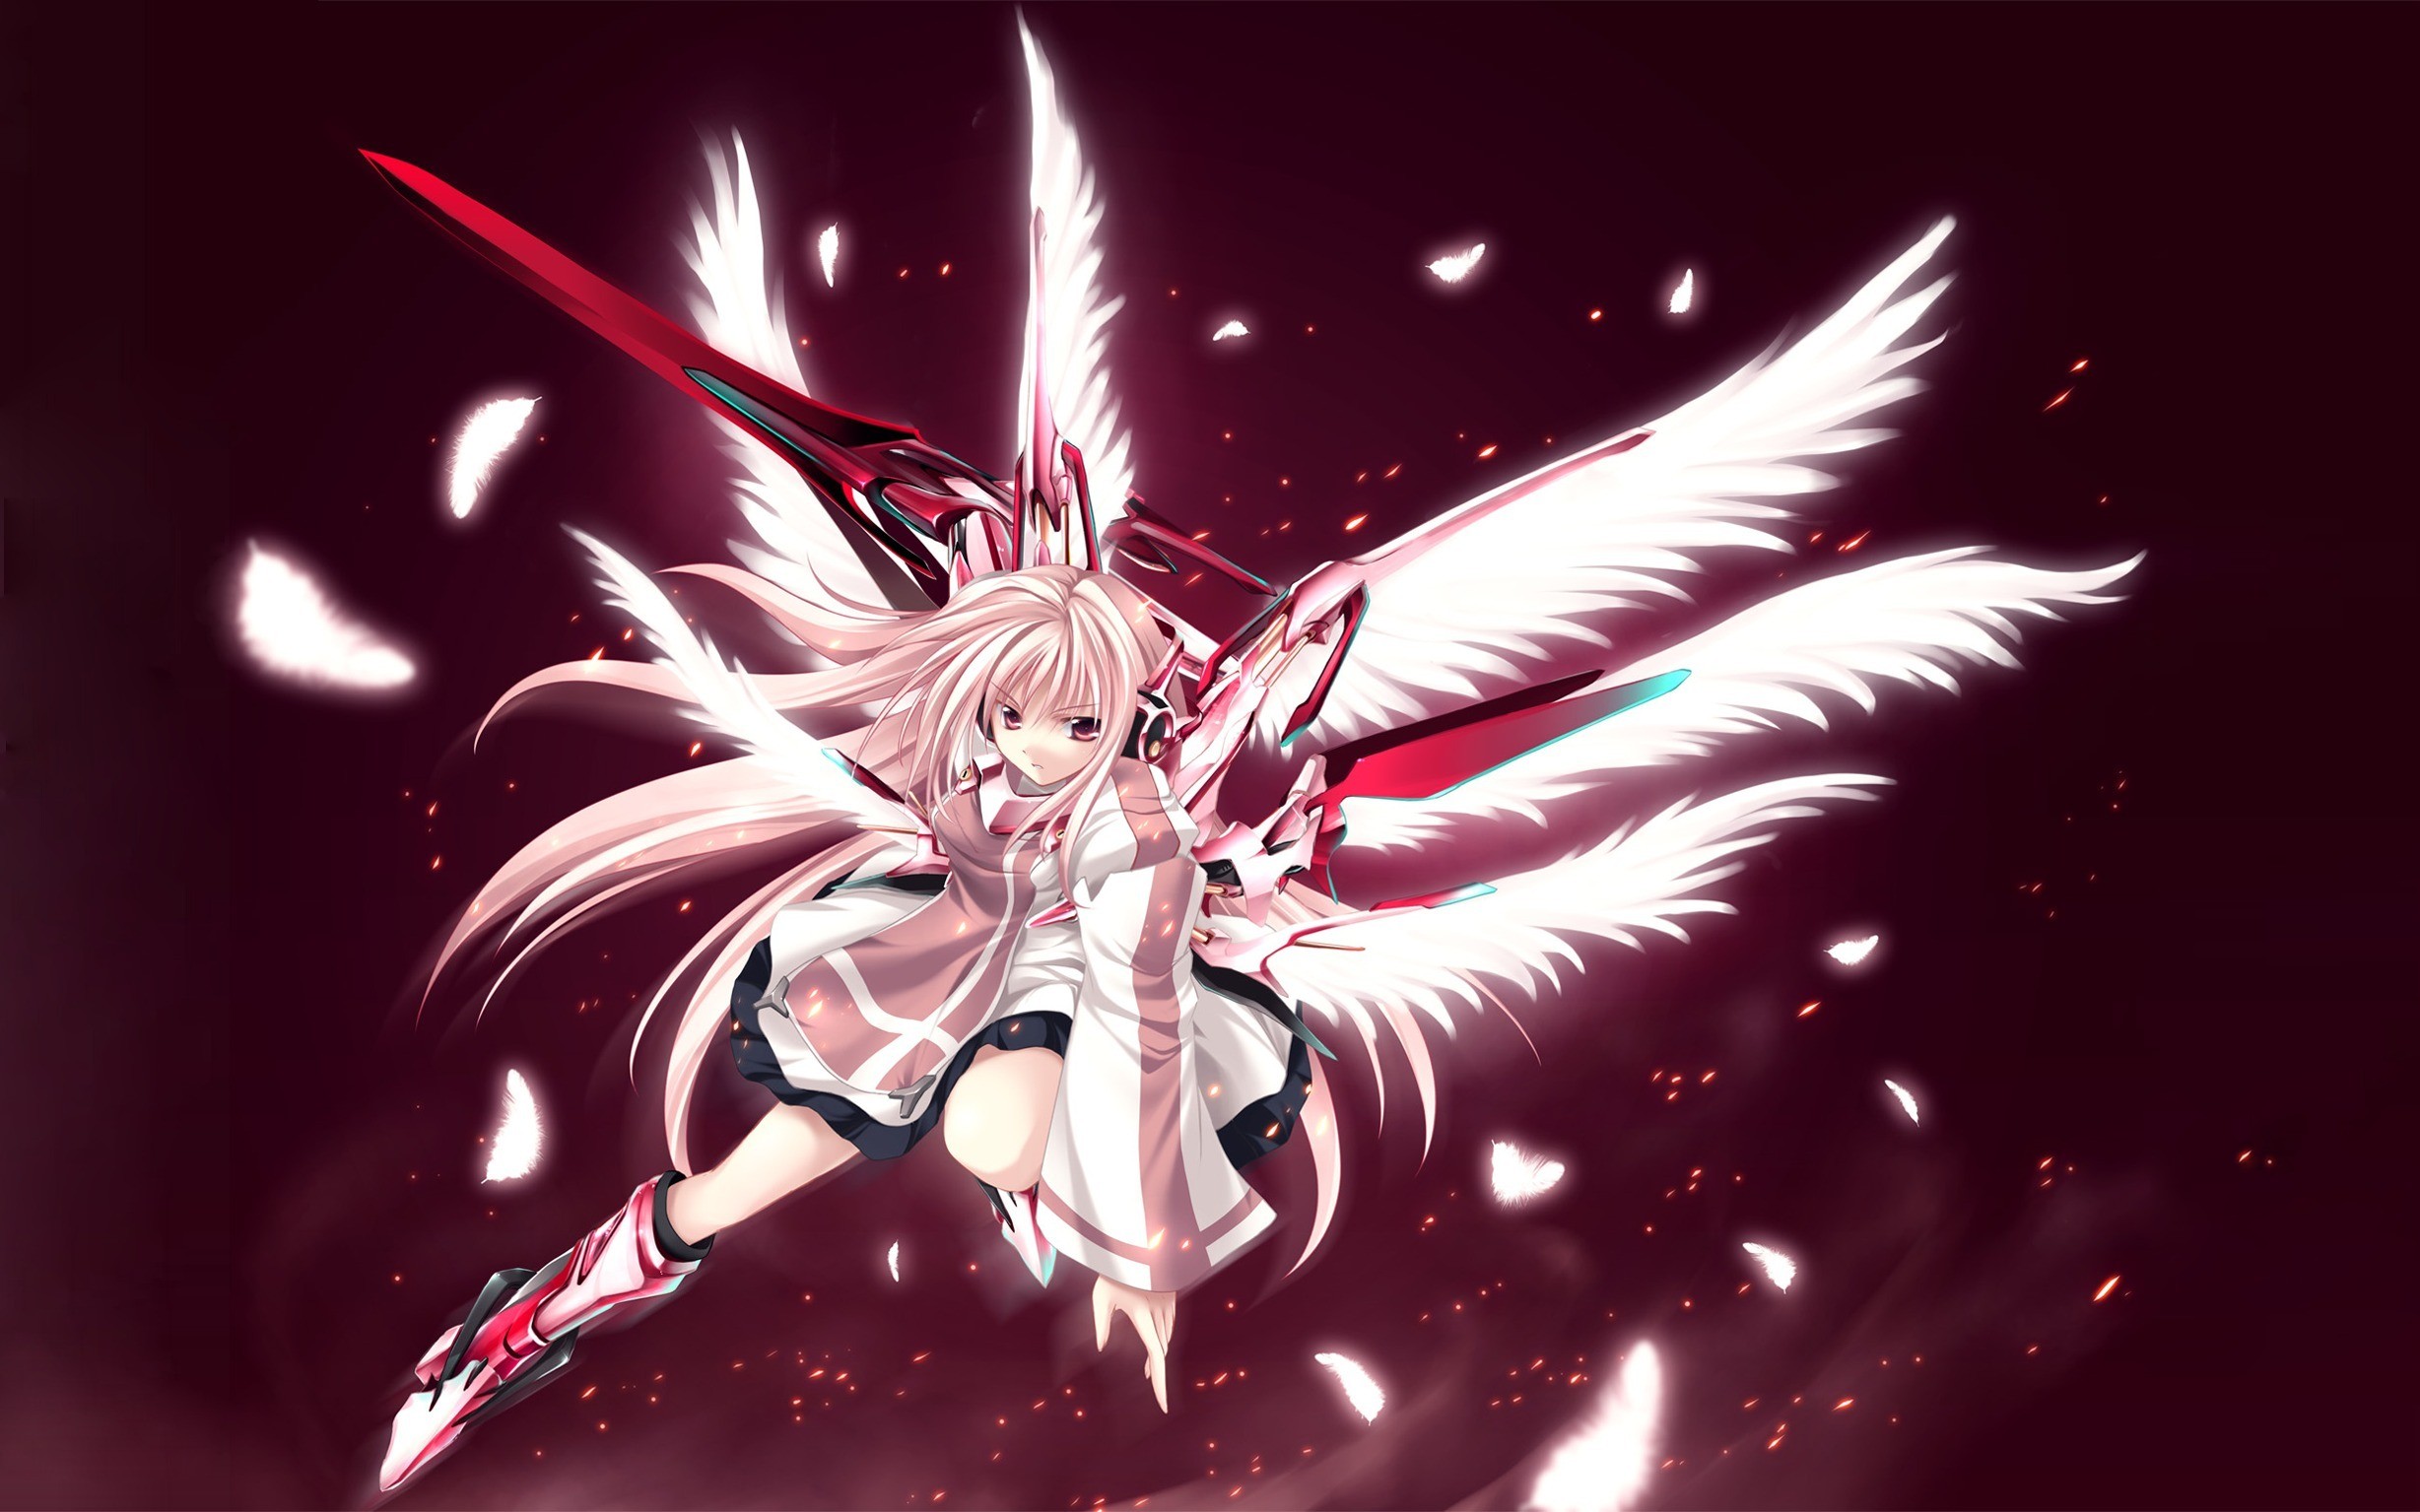 Anime 2456x1535 anime anime girls angel wings sword pink hair fantasy art fantasy girl